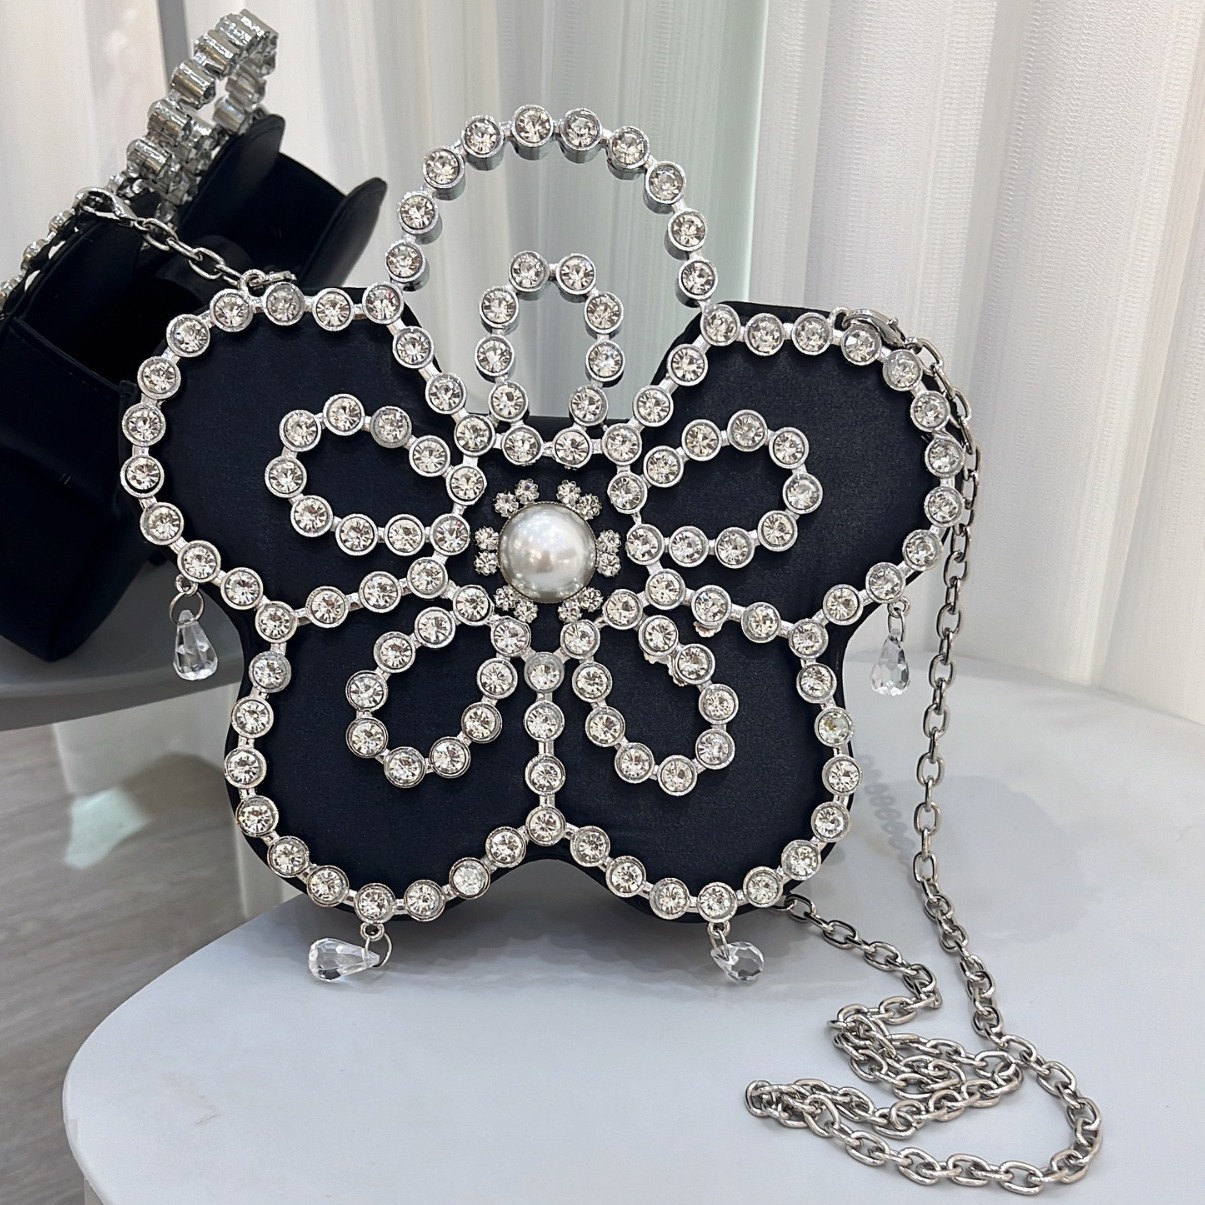 24新品法式仙女包bring超闪镶钻花朵斜挎包珍珠钻链条百搭手提包